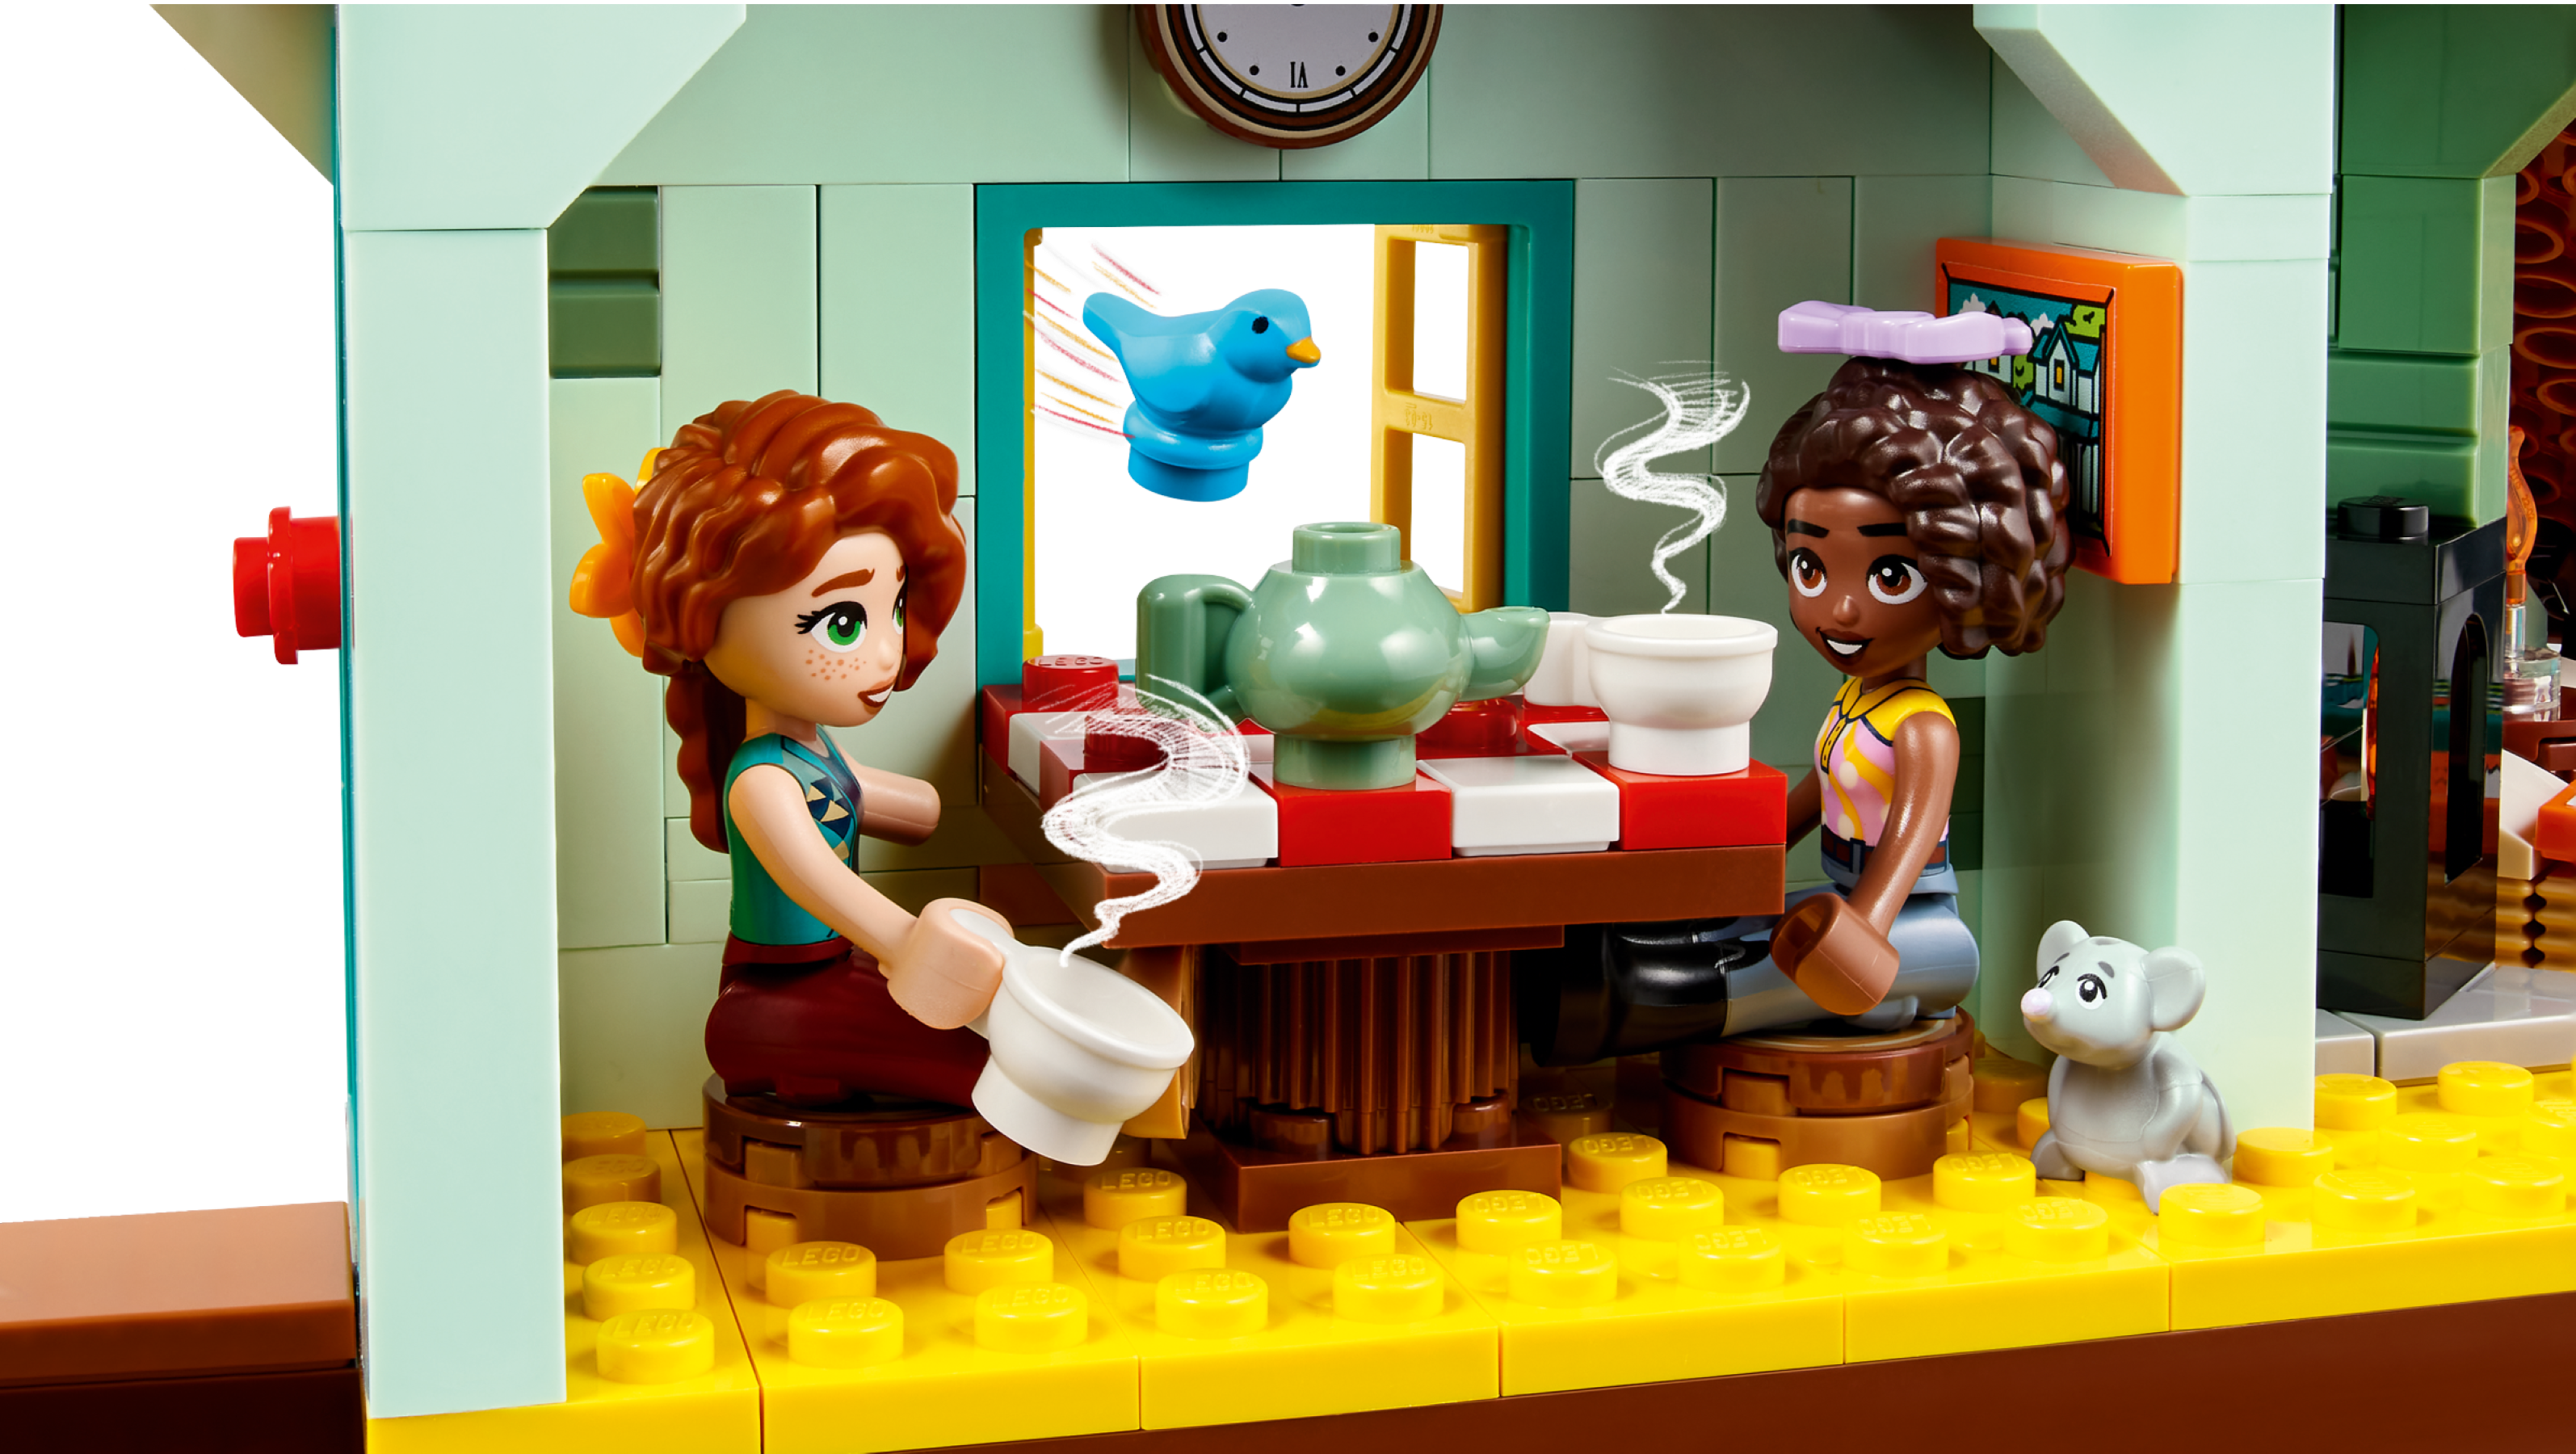 LEGO Friends 41745 L'Écurie d'Autumn, Jouet avec Chevaux, Carrosse, Cadeau  Équitation - ADMI